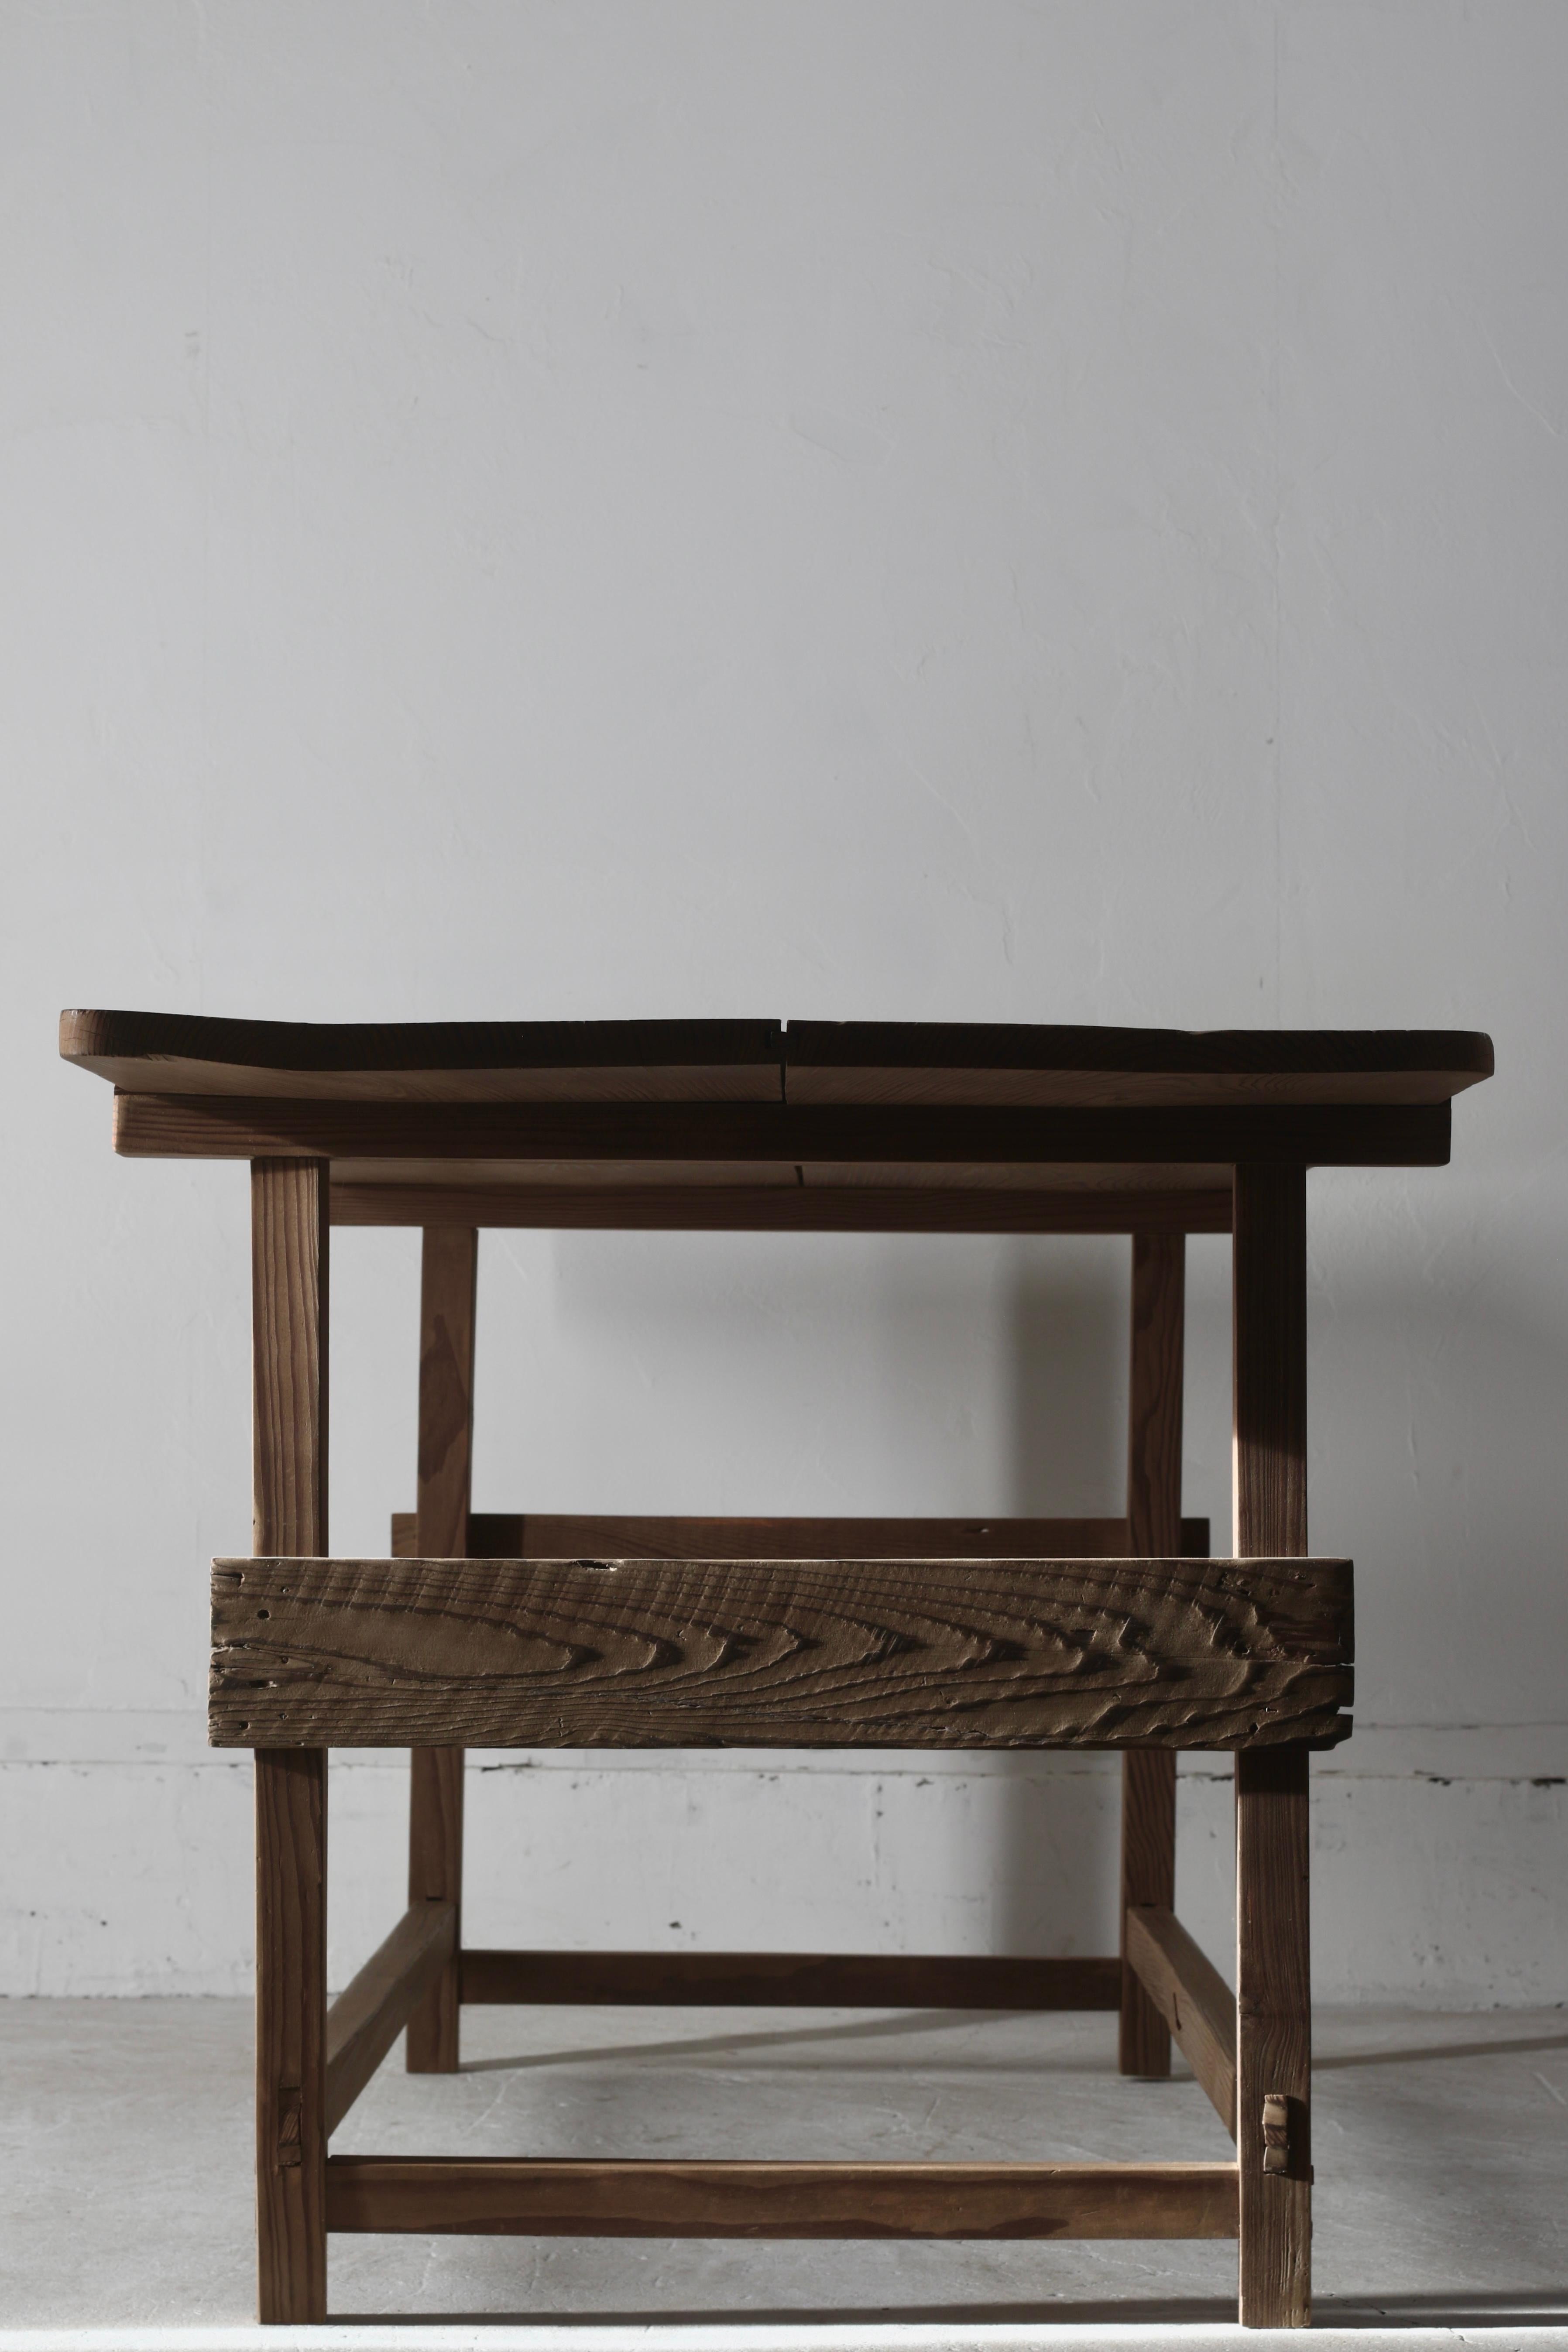 Il s'agit d'une vieille table japonaise.

Les matériaux utilisés sont le cèdre et le pin.

Il semble qu'il ait été fabriqué dans une maison privée de la région de Tohoku au début de la période Showa.

Bien qu'il s'agisse d'un modèle simple, la